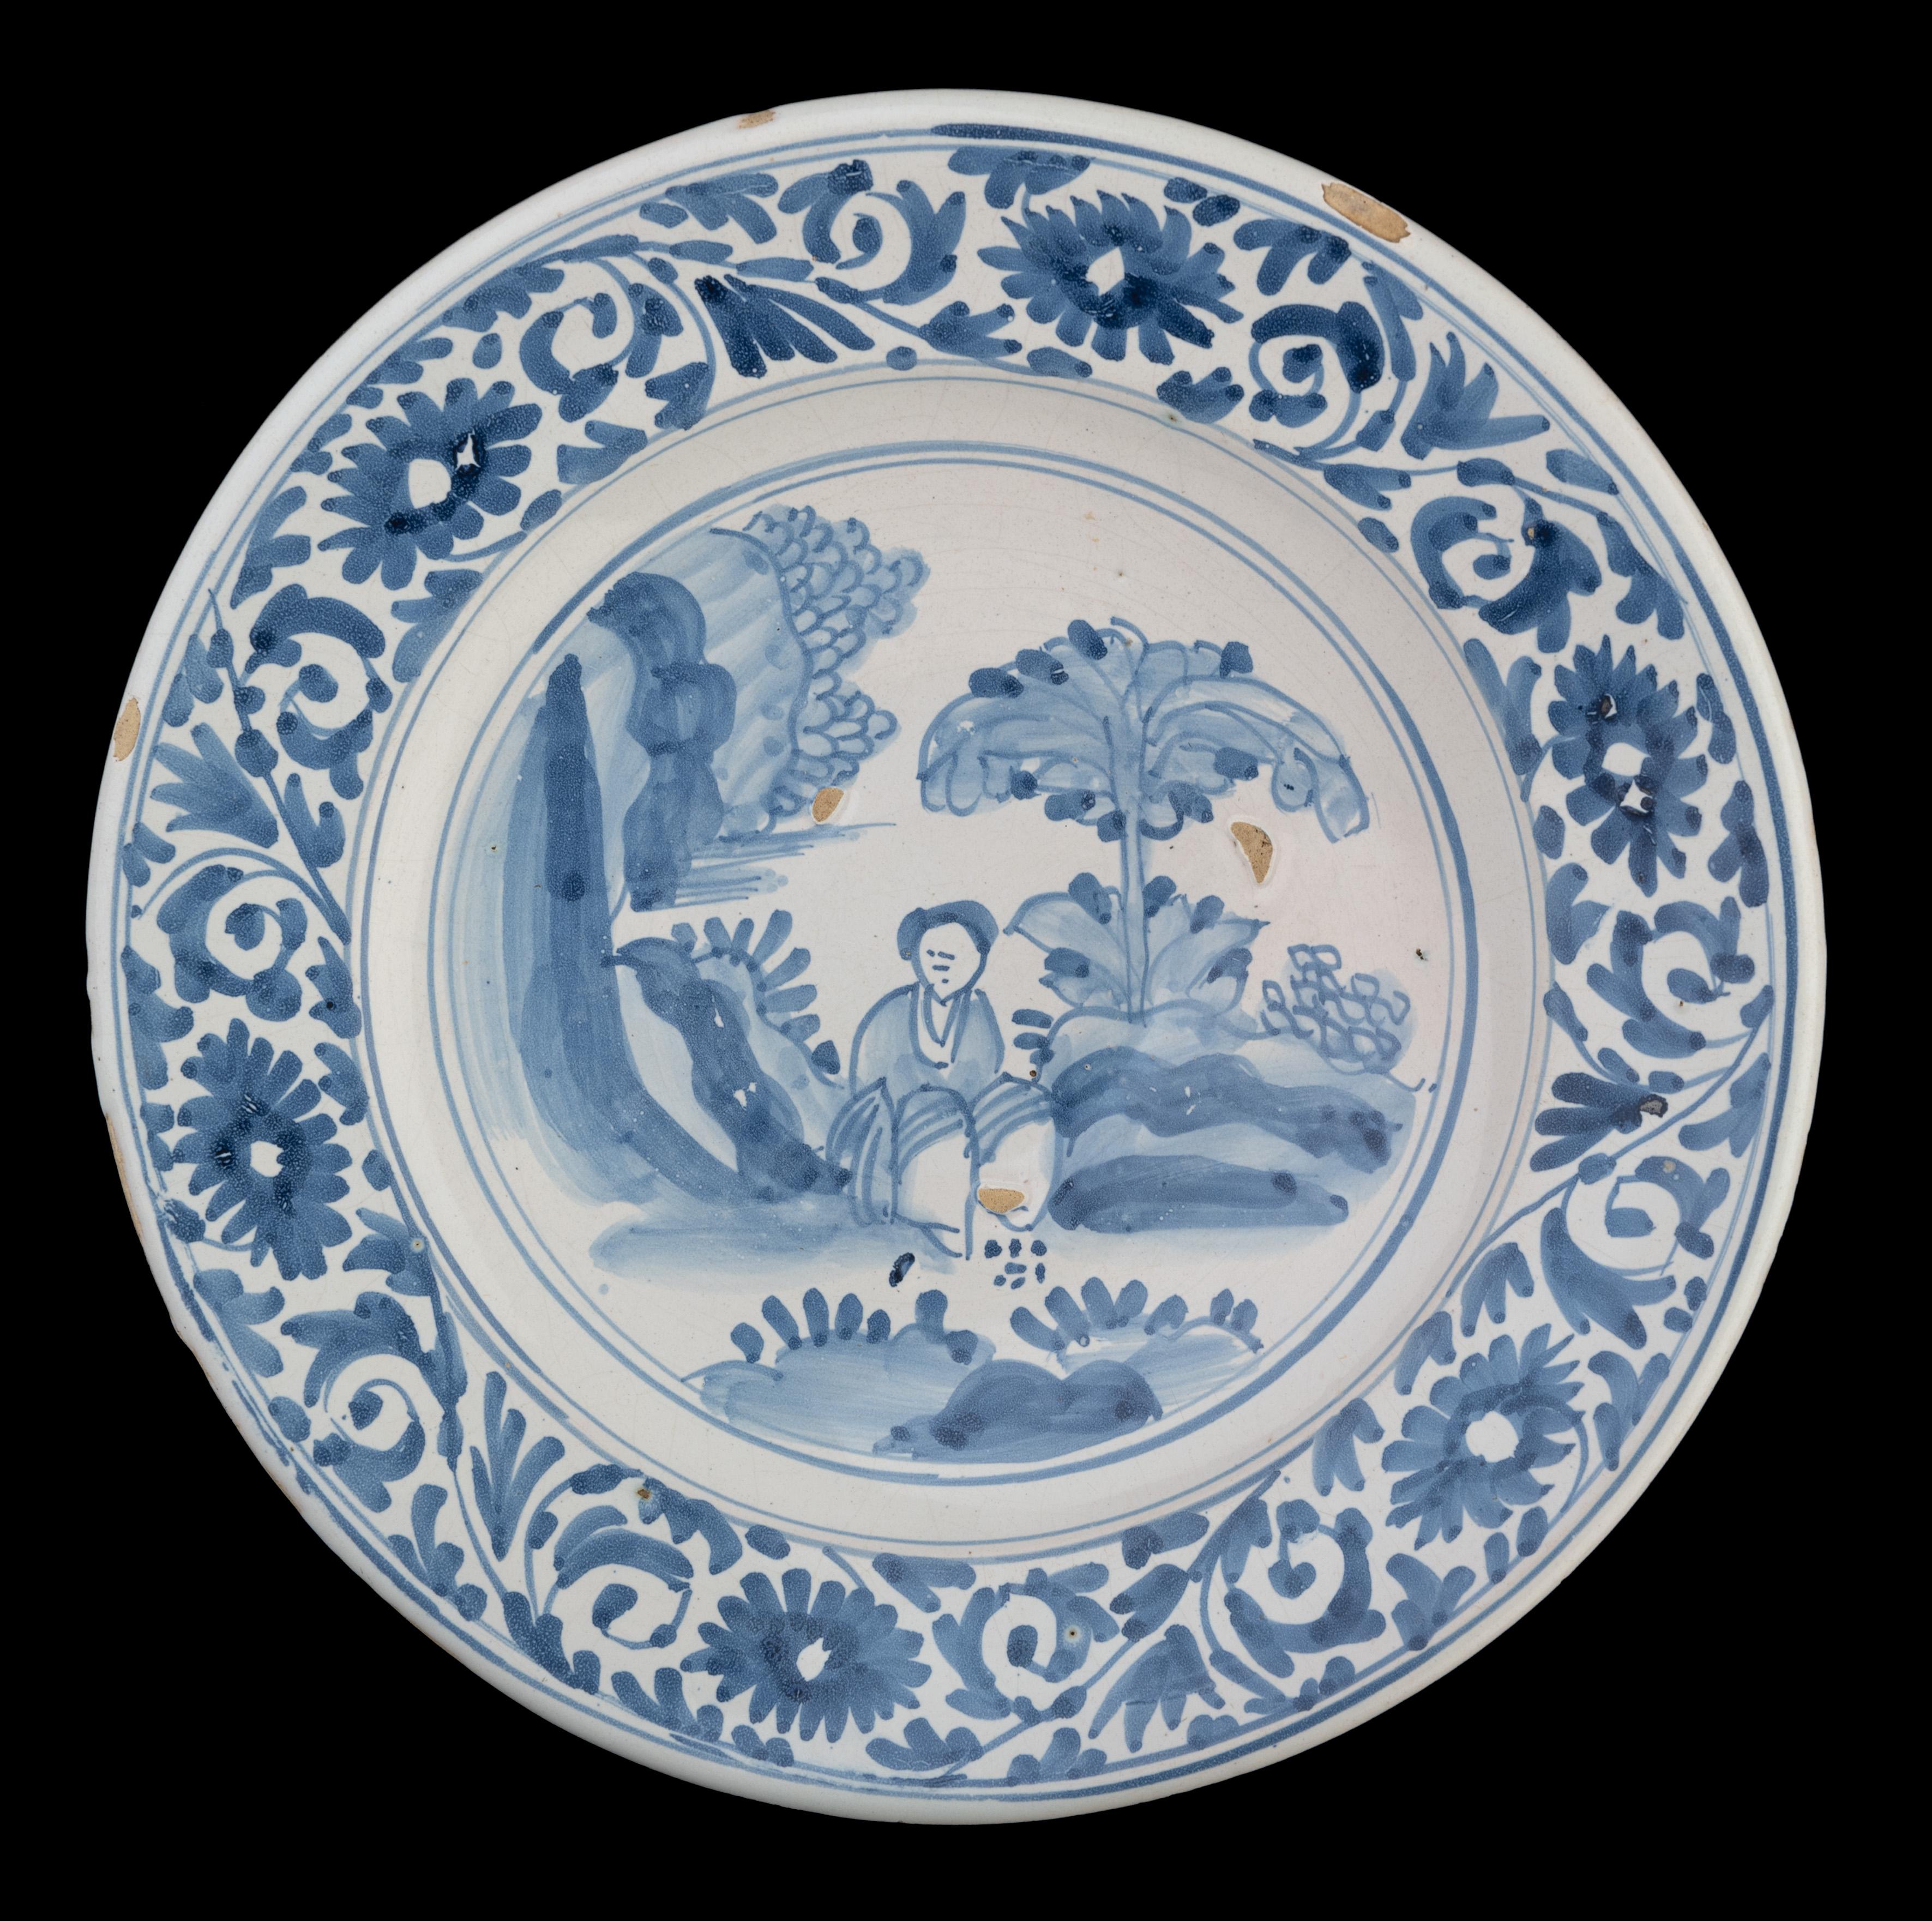 Große blau-weiße Chinoiserie-Schale. Die Niederlande, 1675-1700.

Die blau-weiße Schale hat einen weit ausladenden Flansch und ist in der Mitte mit einer sitzenden chinesischen Figur in einer orientalischen Landschaft innerhalb eines Doppelkreises